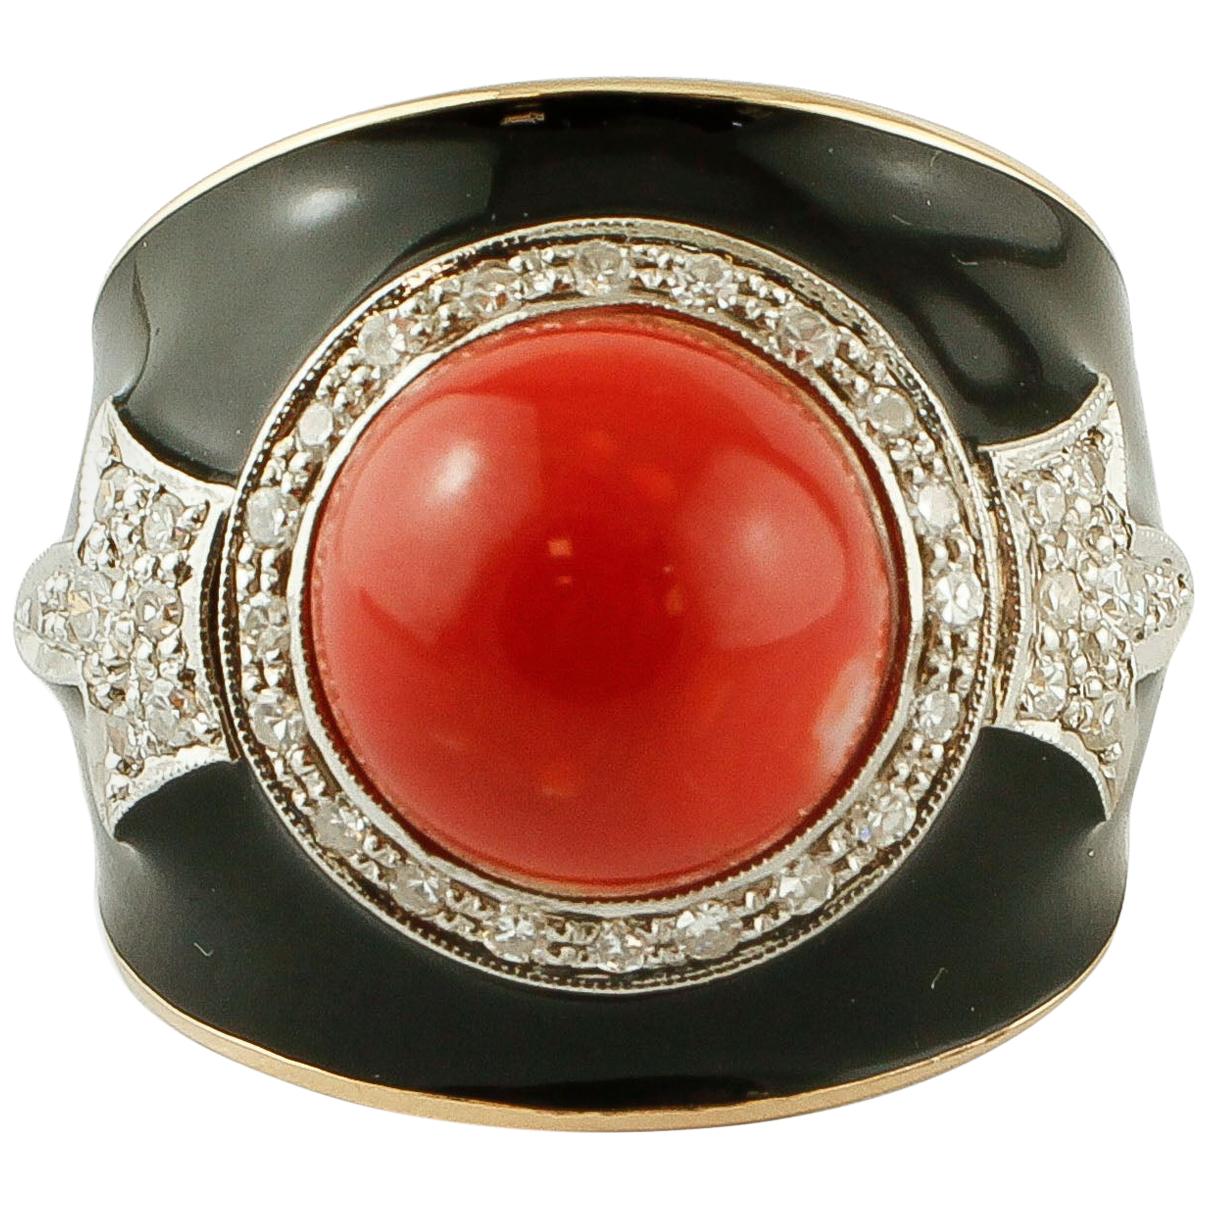 Diamonds, Red Rubrum Coral, Enamel, 14 Karat Yellow and White Gold, Vintage Ring